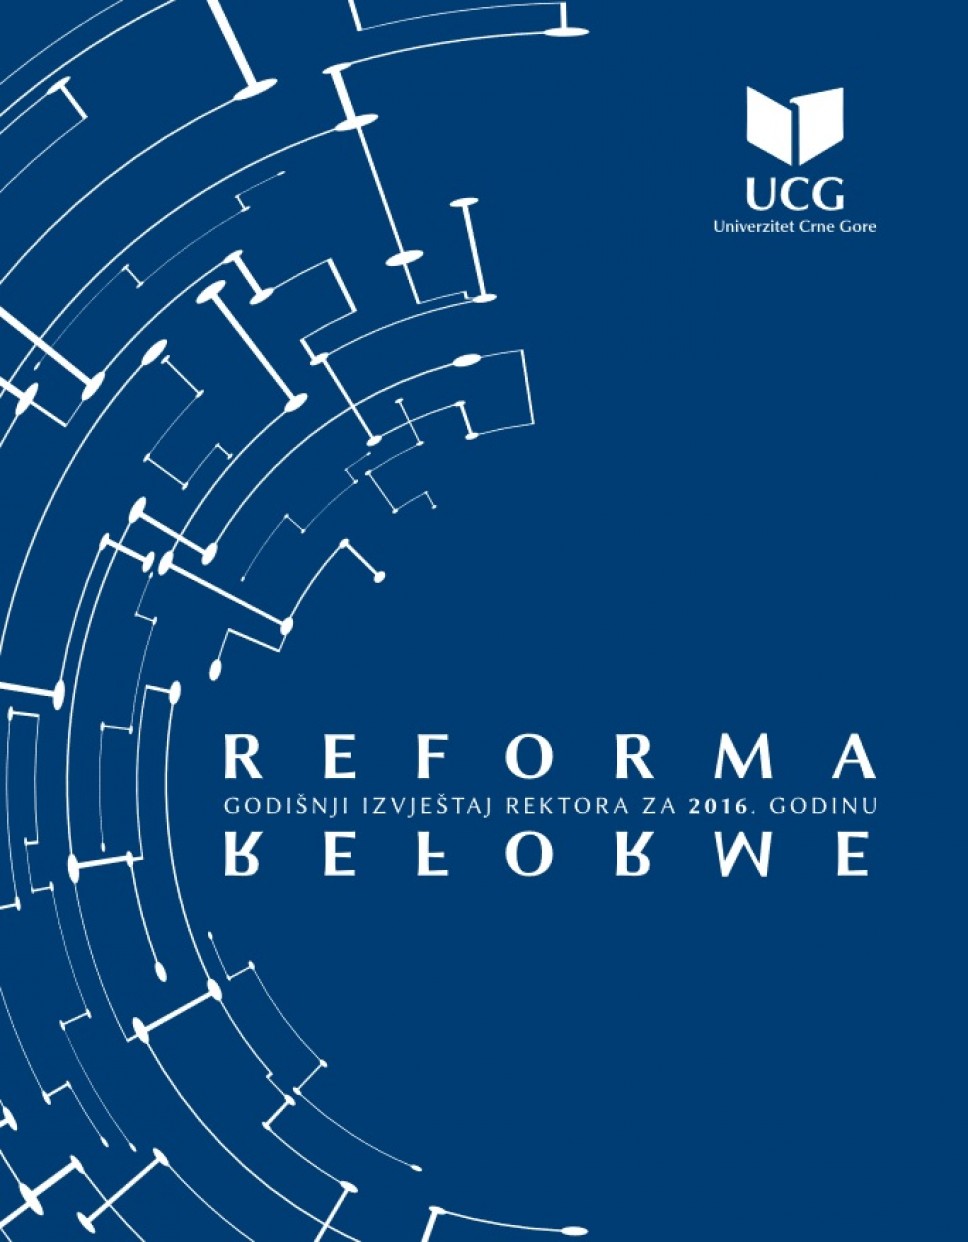 Godišnji izvještaj rektora o radu "Reforma reforme"